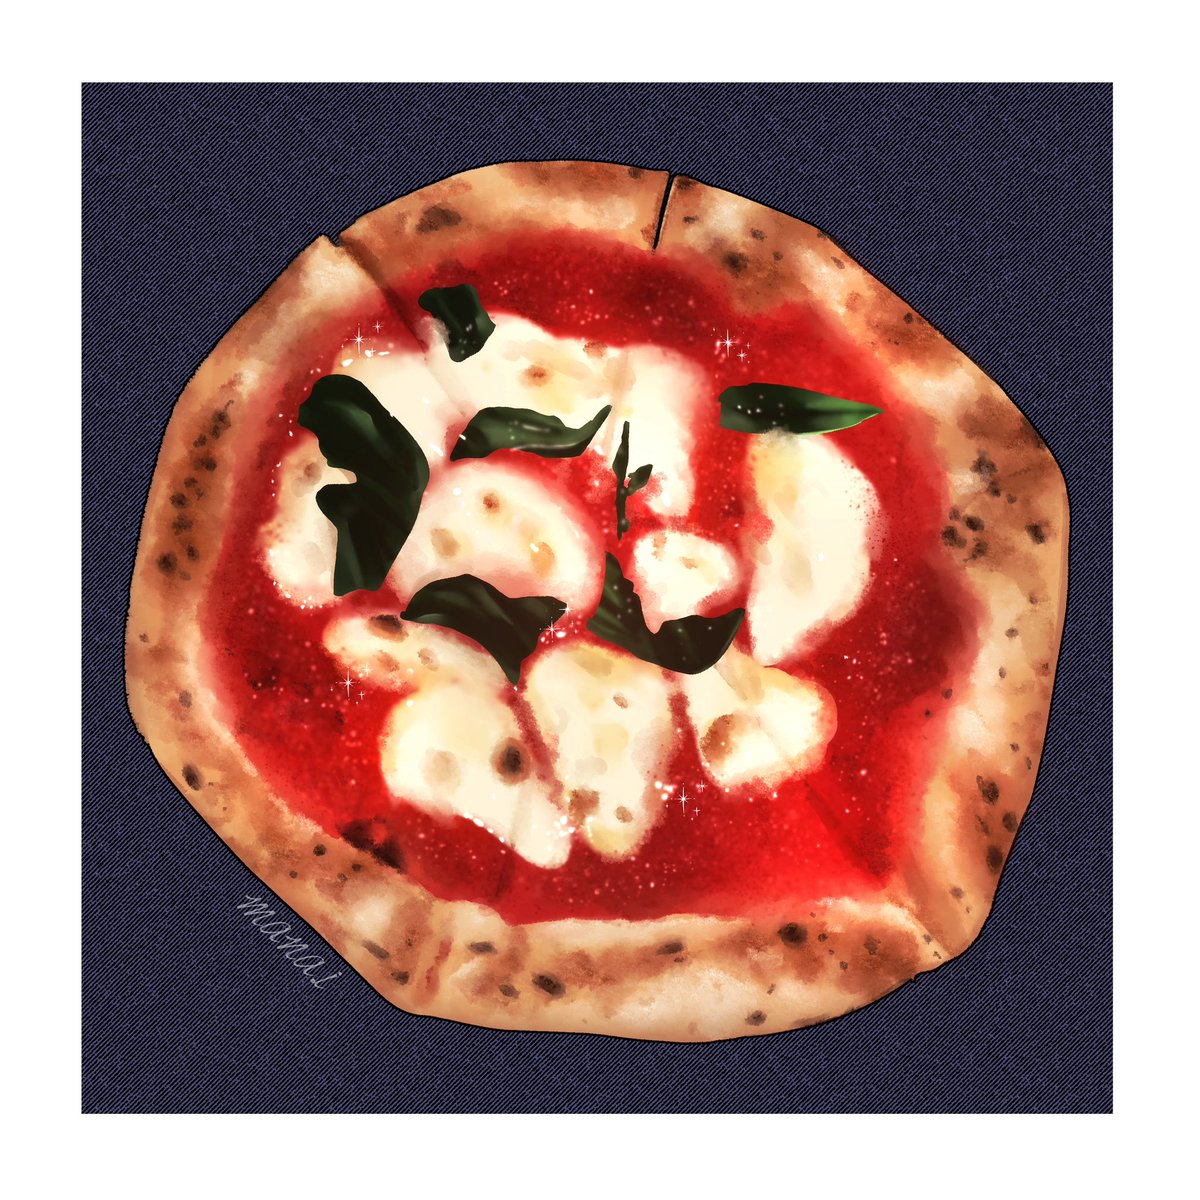 マルゲリータ🍕

#illustration #foodillustration #drawing 
#イラスト #食べ物イラスト #マルゲリータ #ピザ #pizza